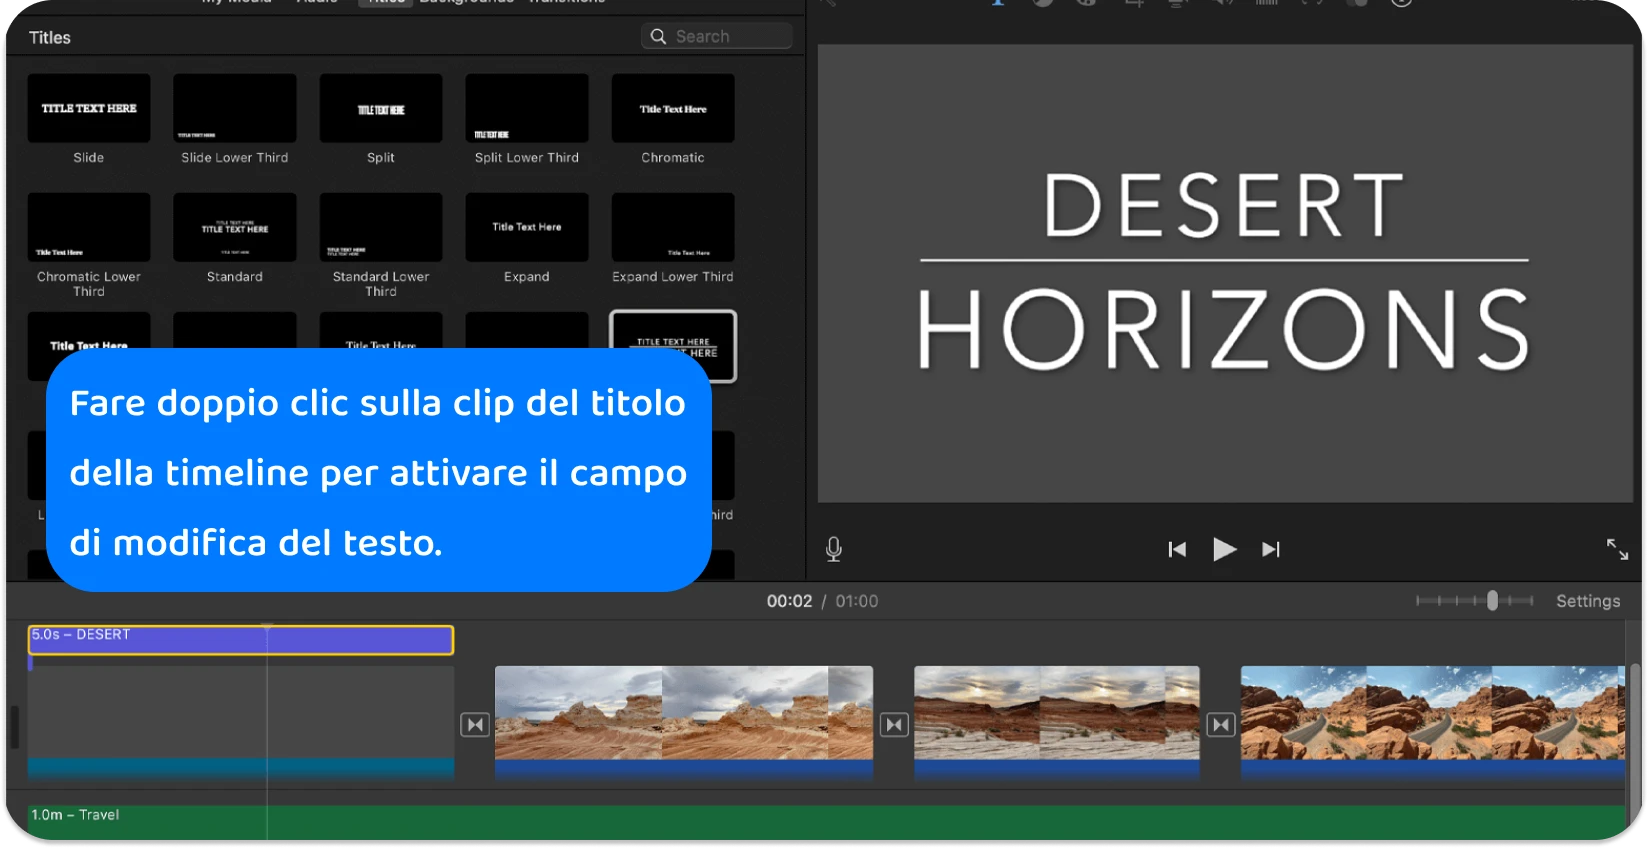 L'interfaccia Titoli di iMovie mostra una varietà di stili e formati di testo per aggiungere titoli professionali ai progetti video.
